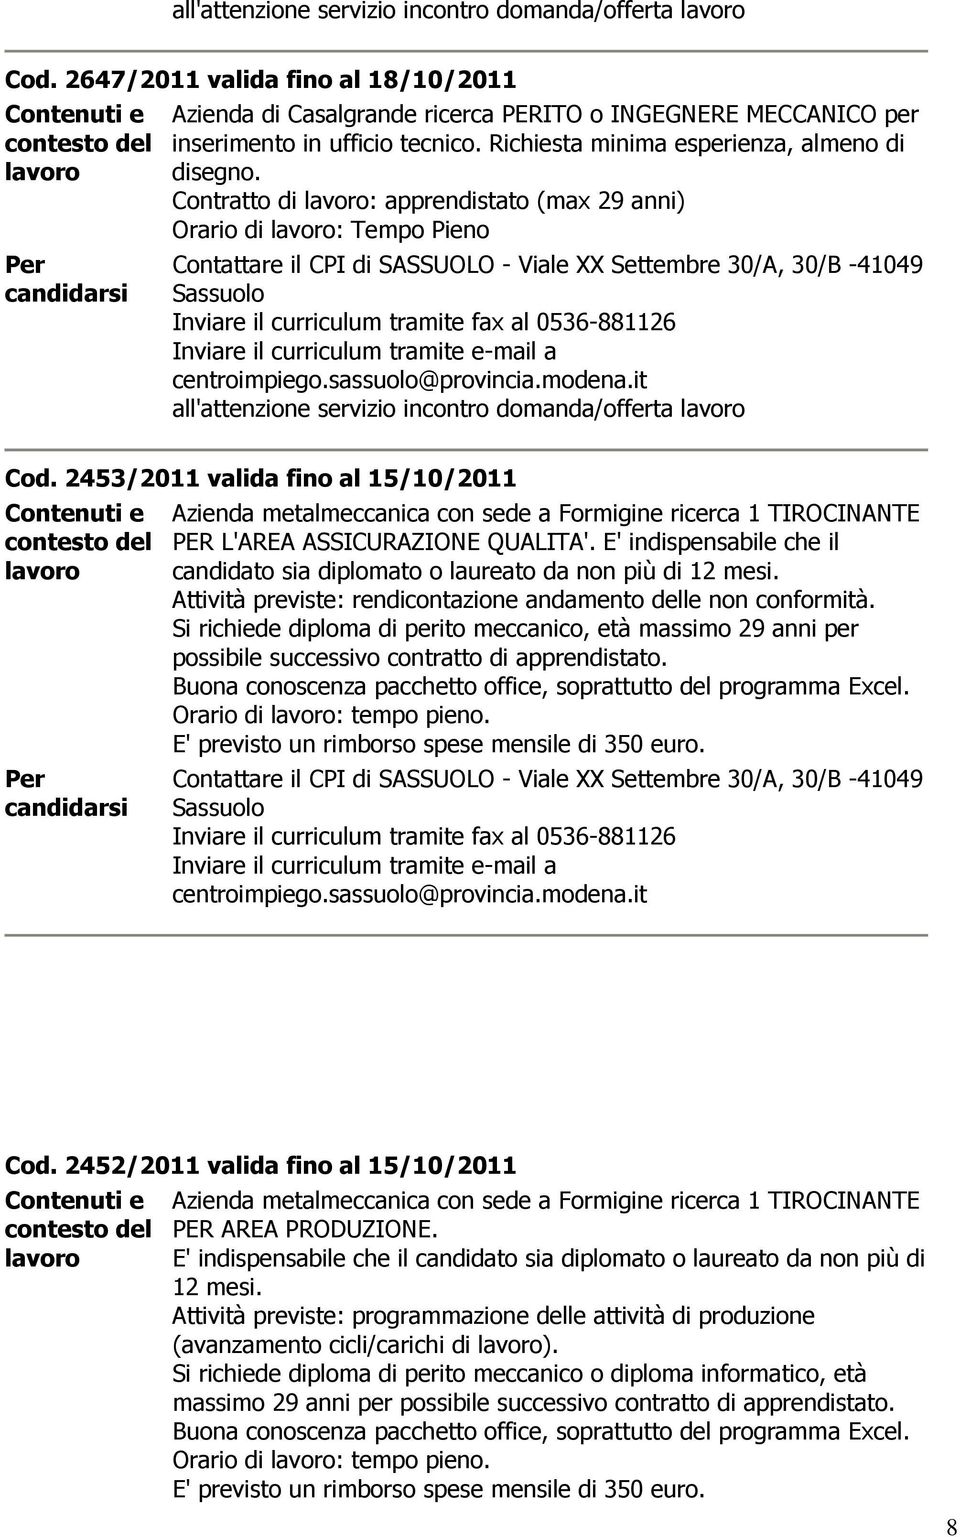 2453/2011 valida fino al 15/10/2011 metalmeccanica con sede a Formigine ricerca 1 TIROCINANTE PER L'AREA ASSICURAZIONE QUALITA'.